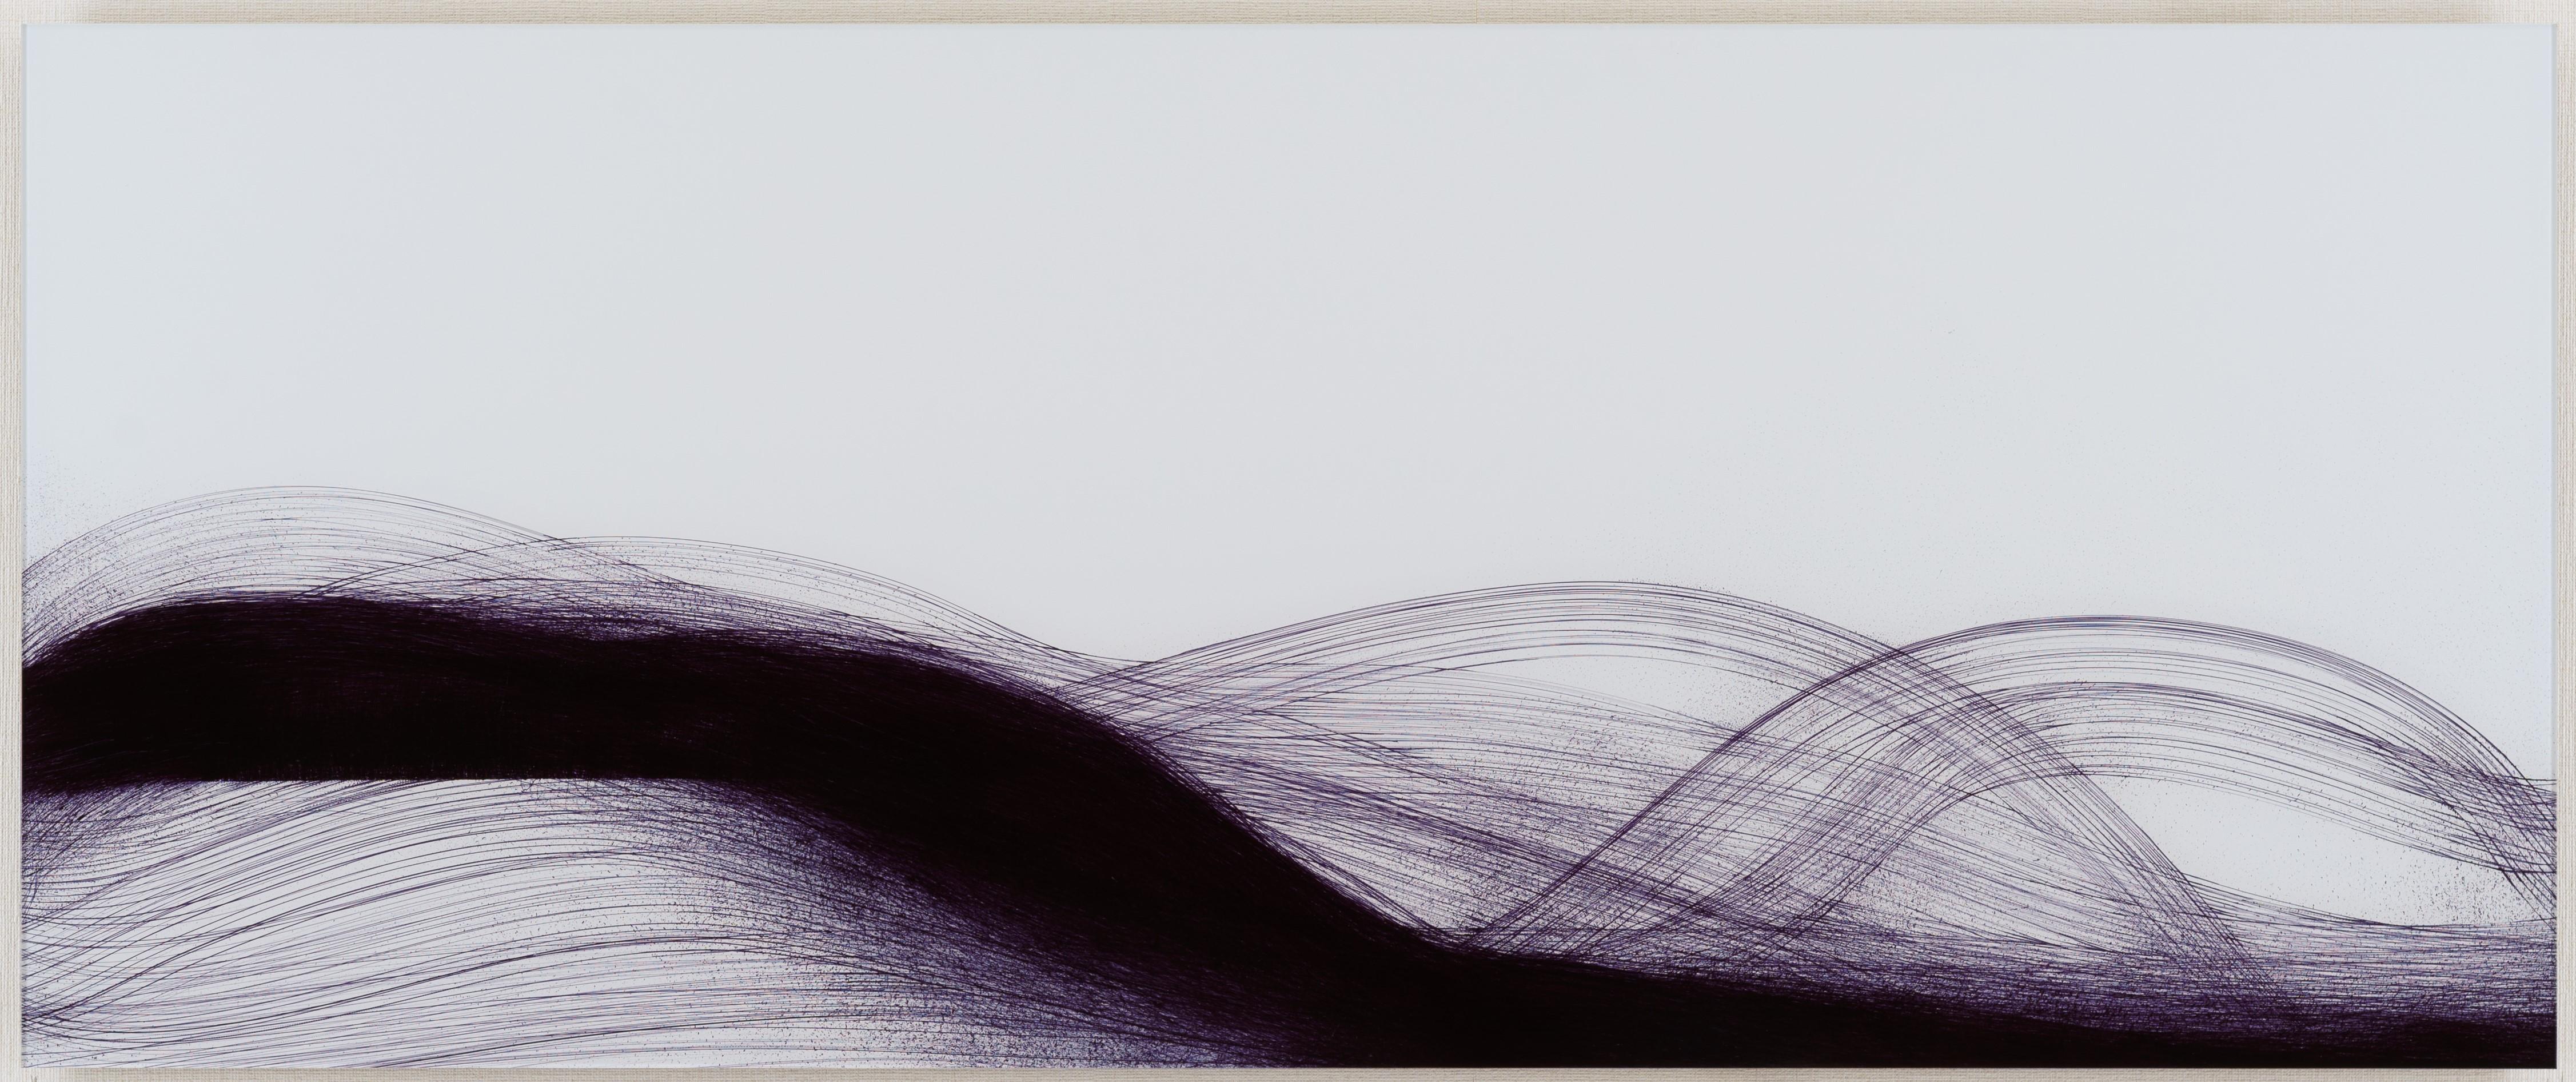 Chihiro Kabata Abstract Drawing - Observation, 4 Jan 2019